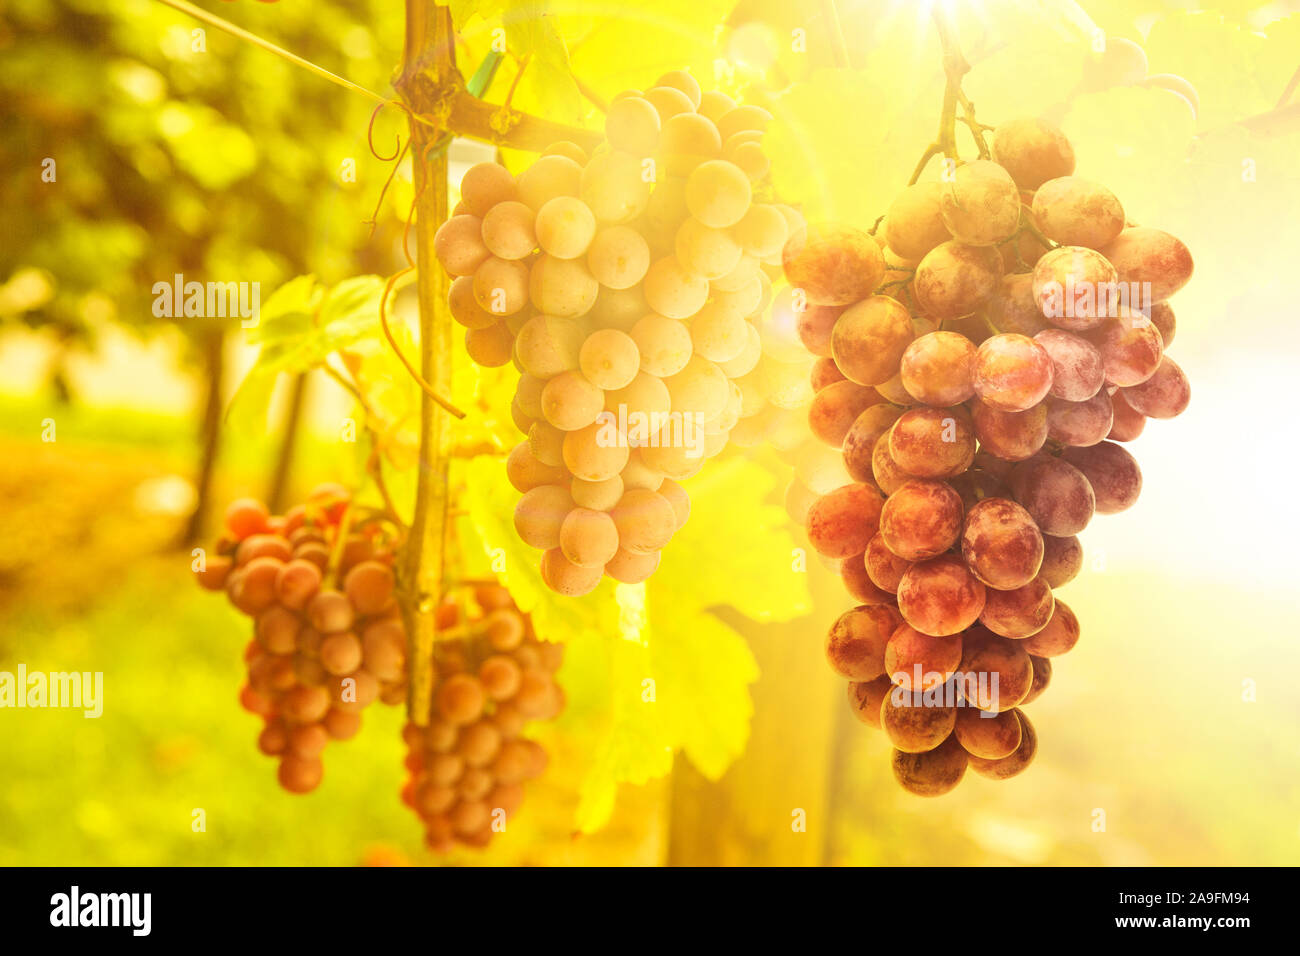 Vines on the vine Stock Photo